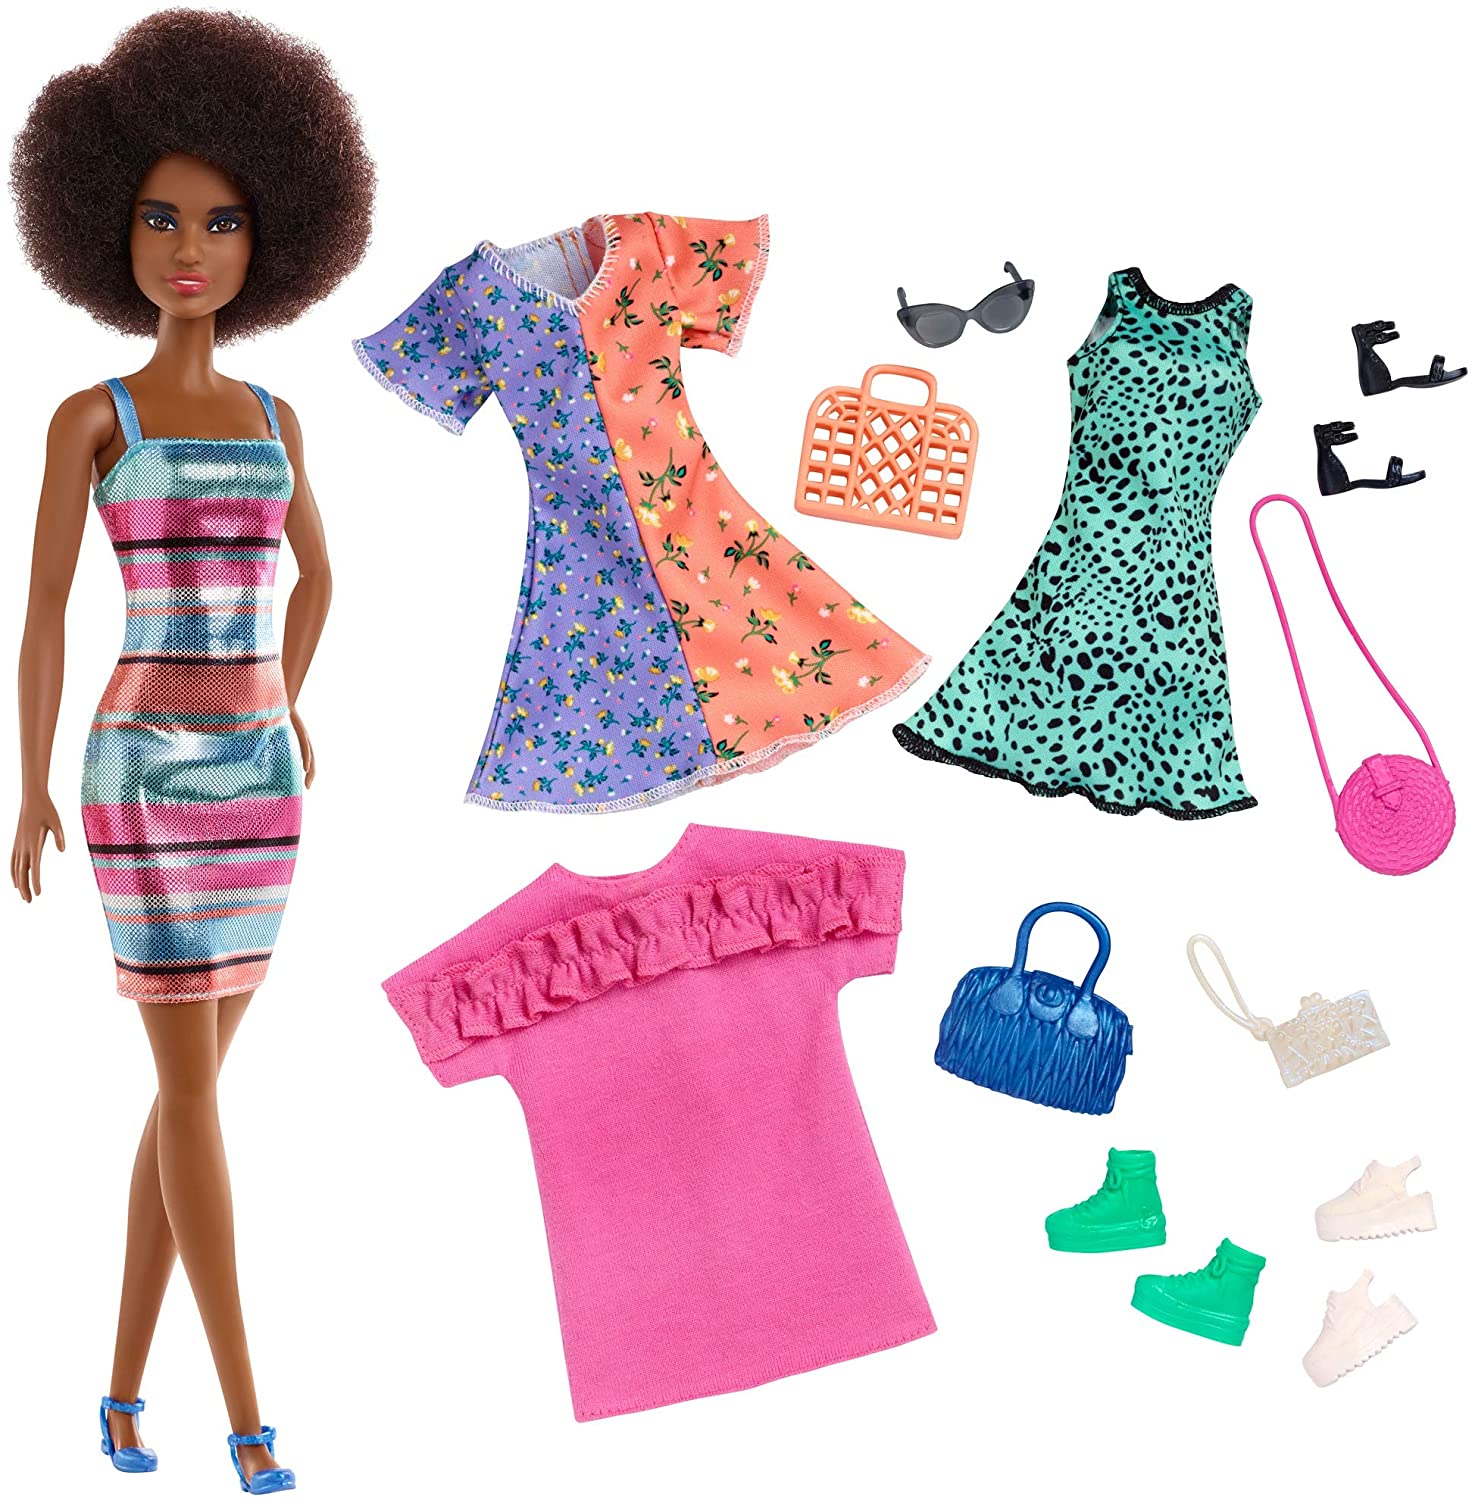 Jouet Mattel - GHT32 - Barbie Fashion Party Doll et accessoires 2